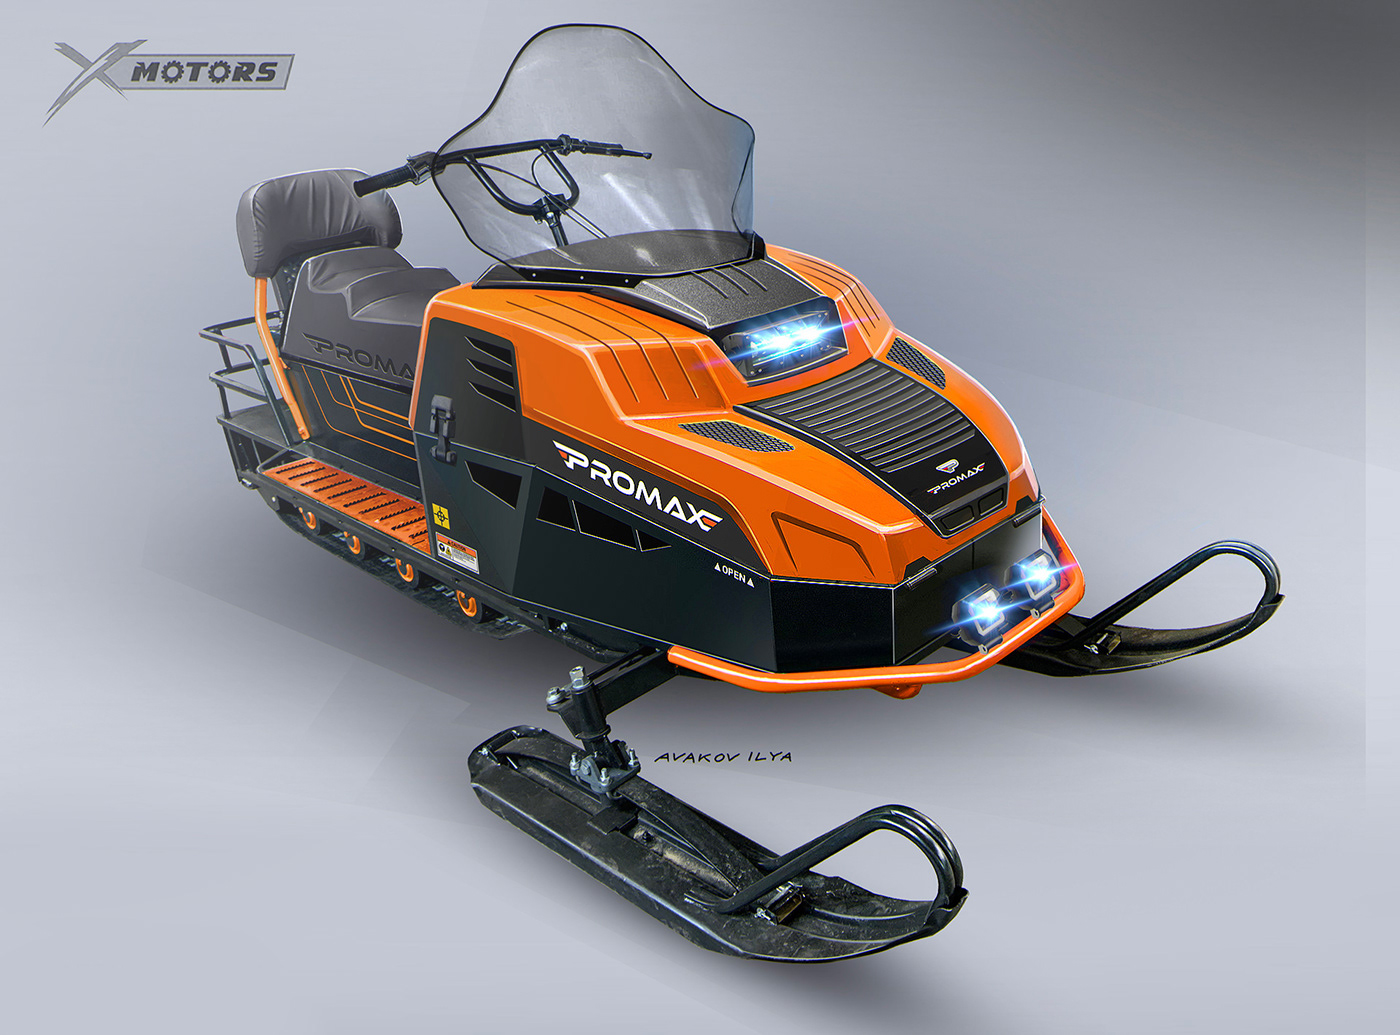 Snowmobile design special for X-motors company, designer Ilya Avakov